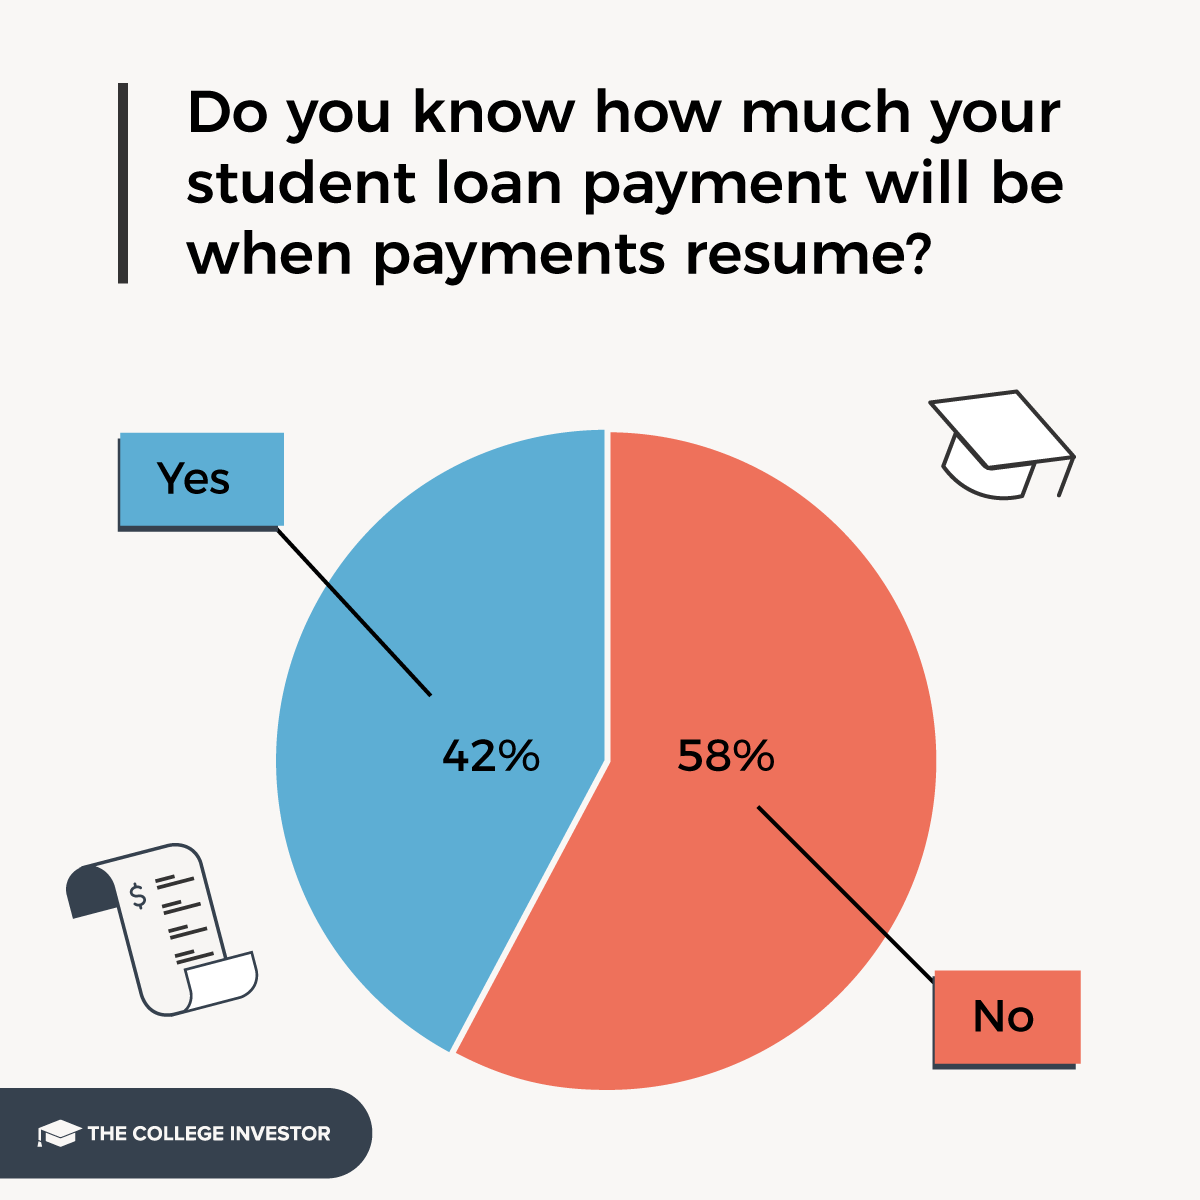 La mayoría de los prestatarios no saben cuánto serán los pagos de sus préstamos estudiantiles